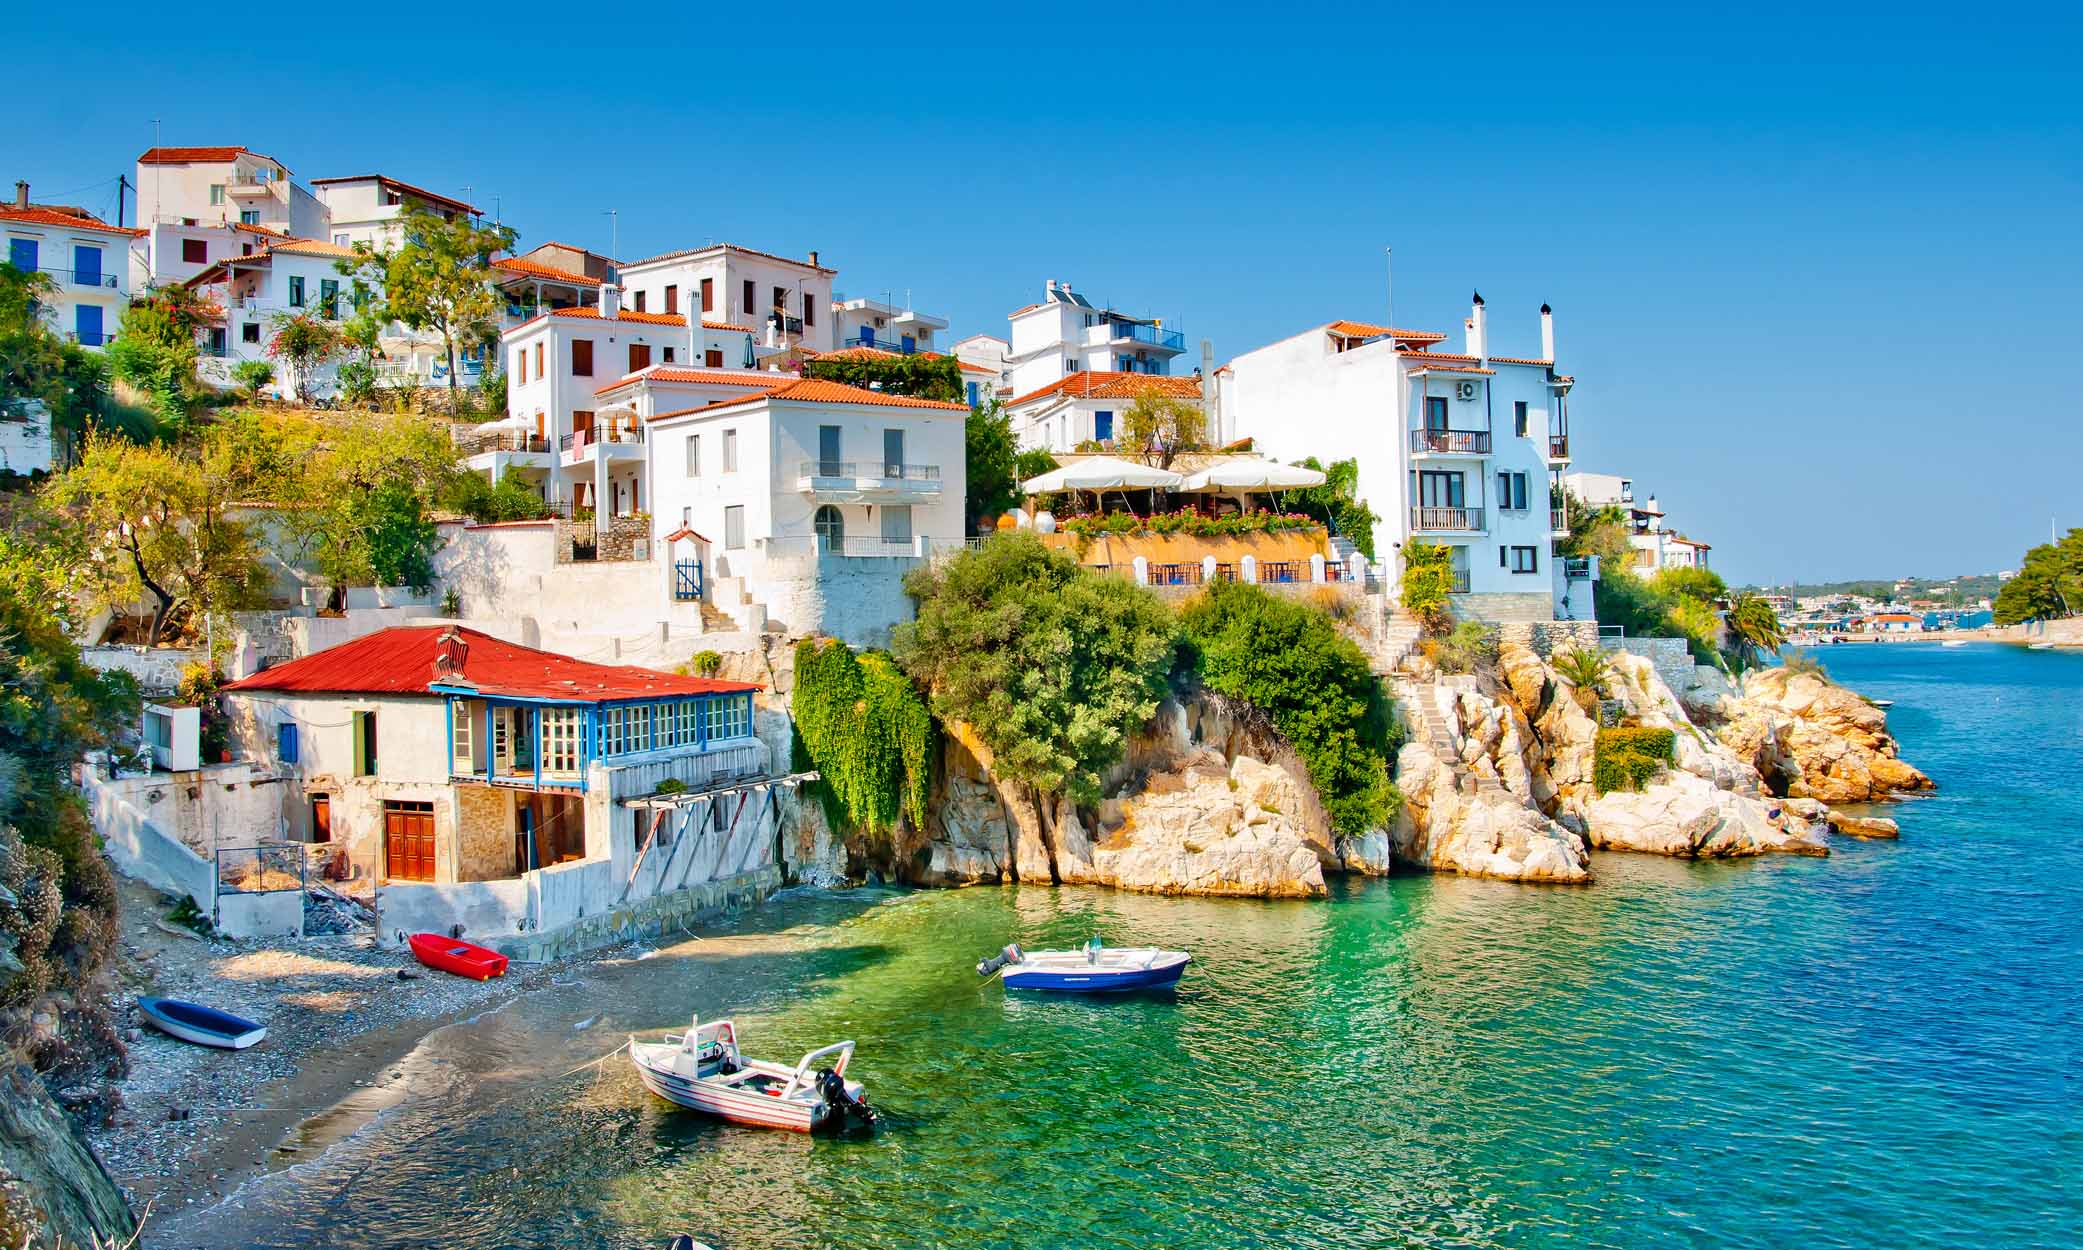 Tìm hiểu về các lợi ích của chương trình Cư trú tại Hy Lạp thông qua Đầu tư.